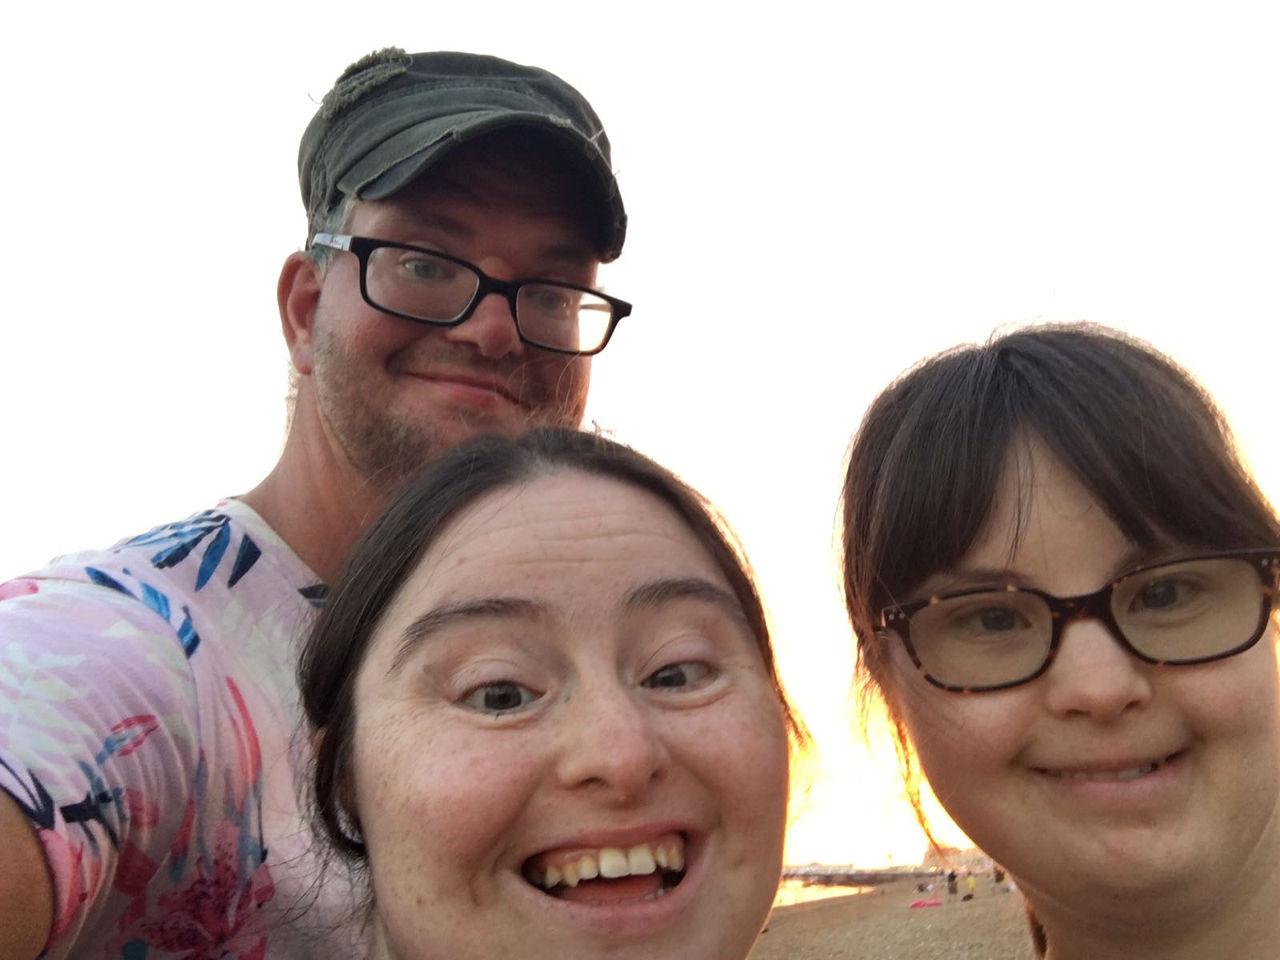 Chris, Hilly & Megan selfie.